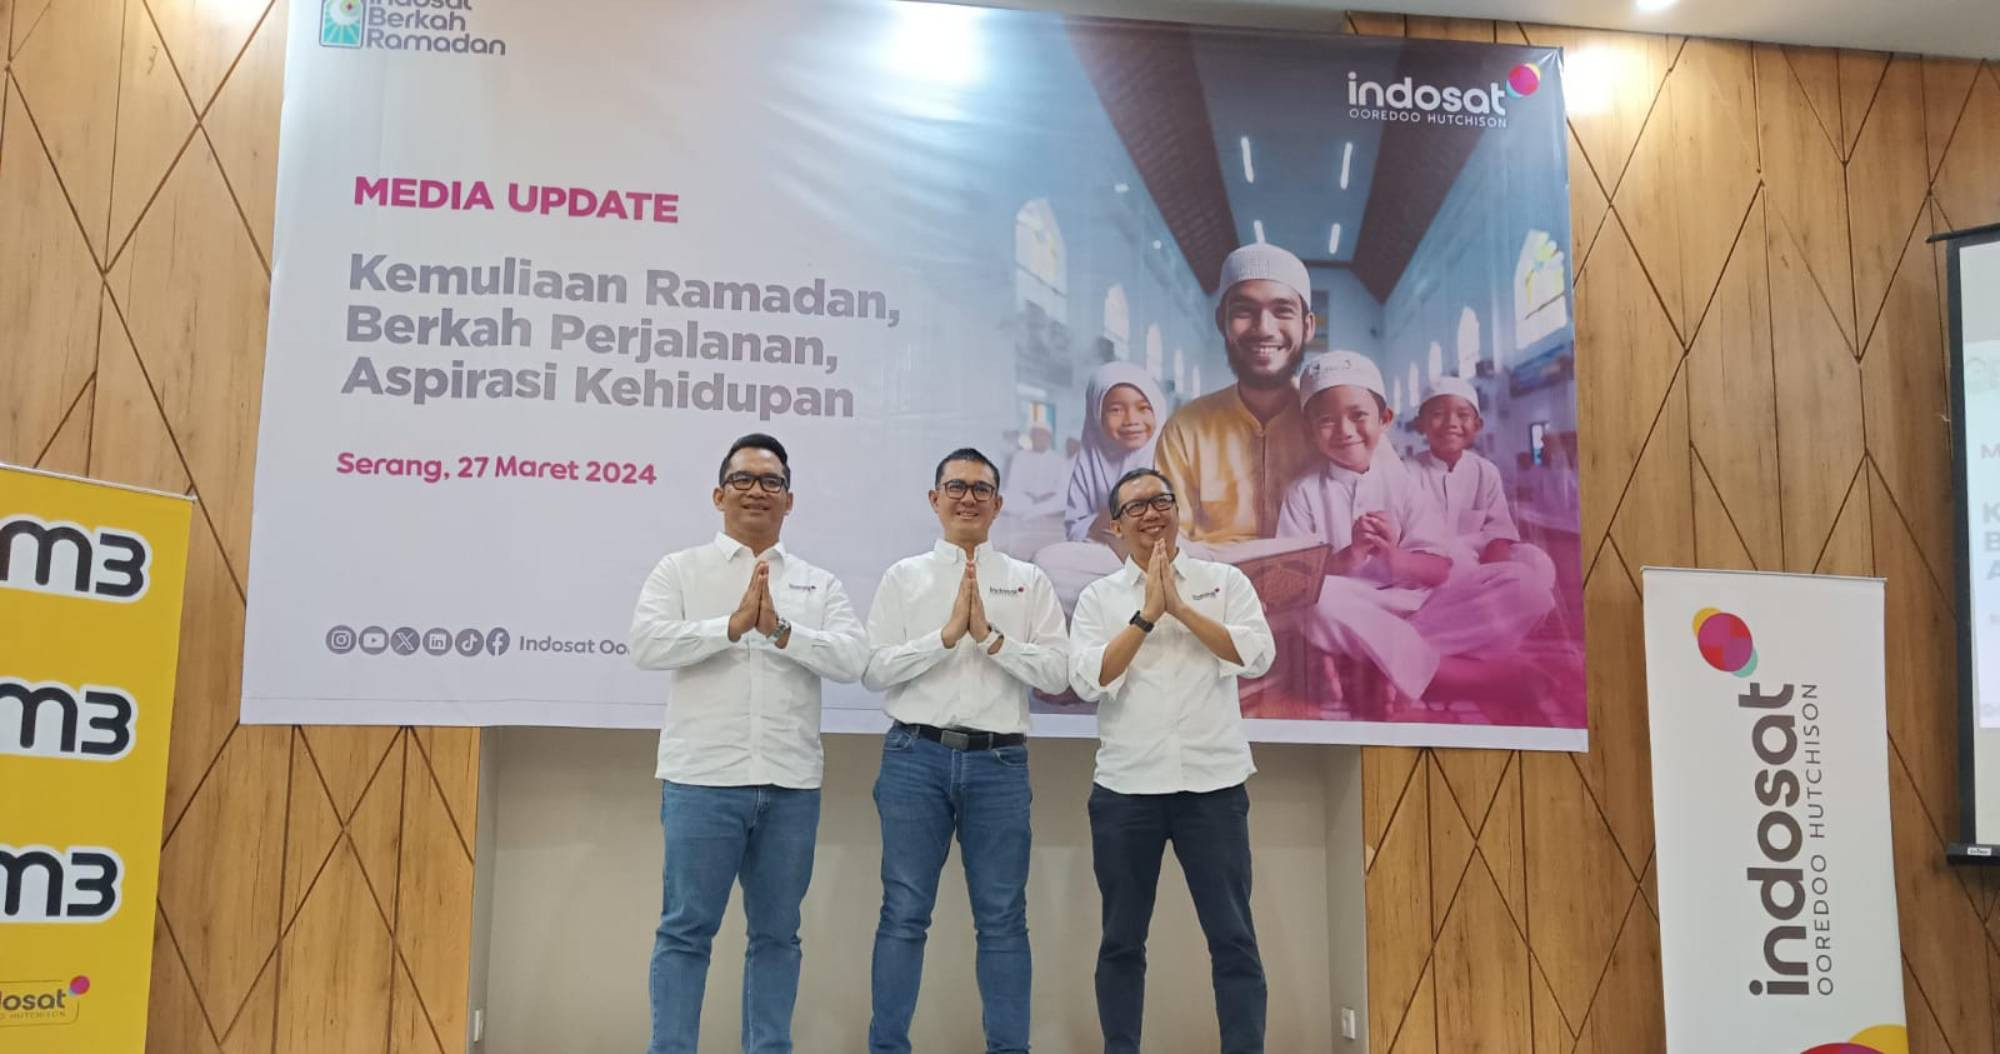 Hampir 100 Juta Pelanggan Indosat Dapat Penawaran Menarik Selama Ramadan - JPNN.com Banten